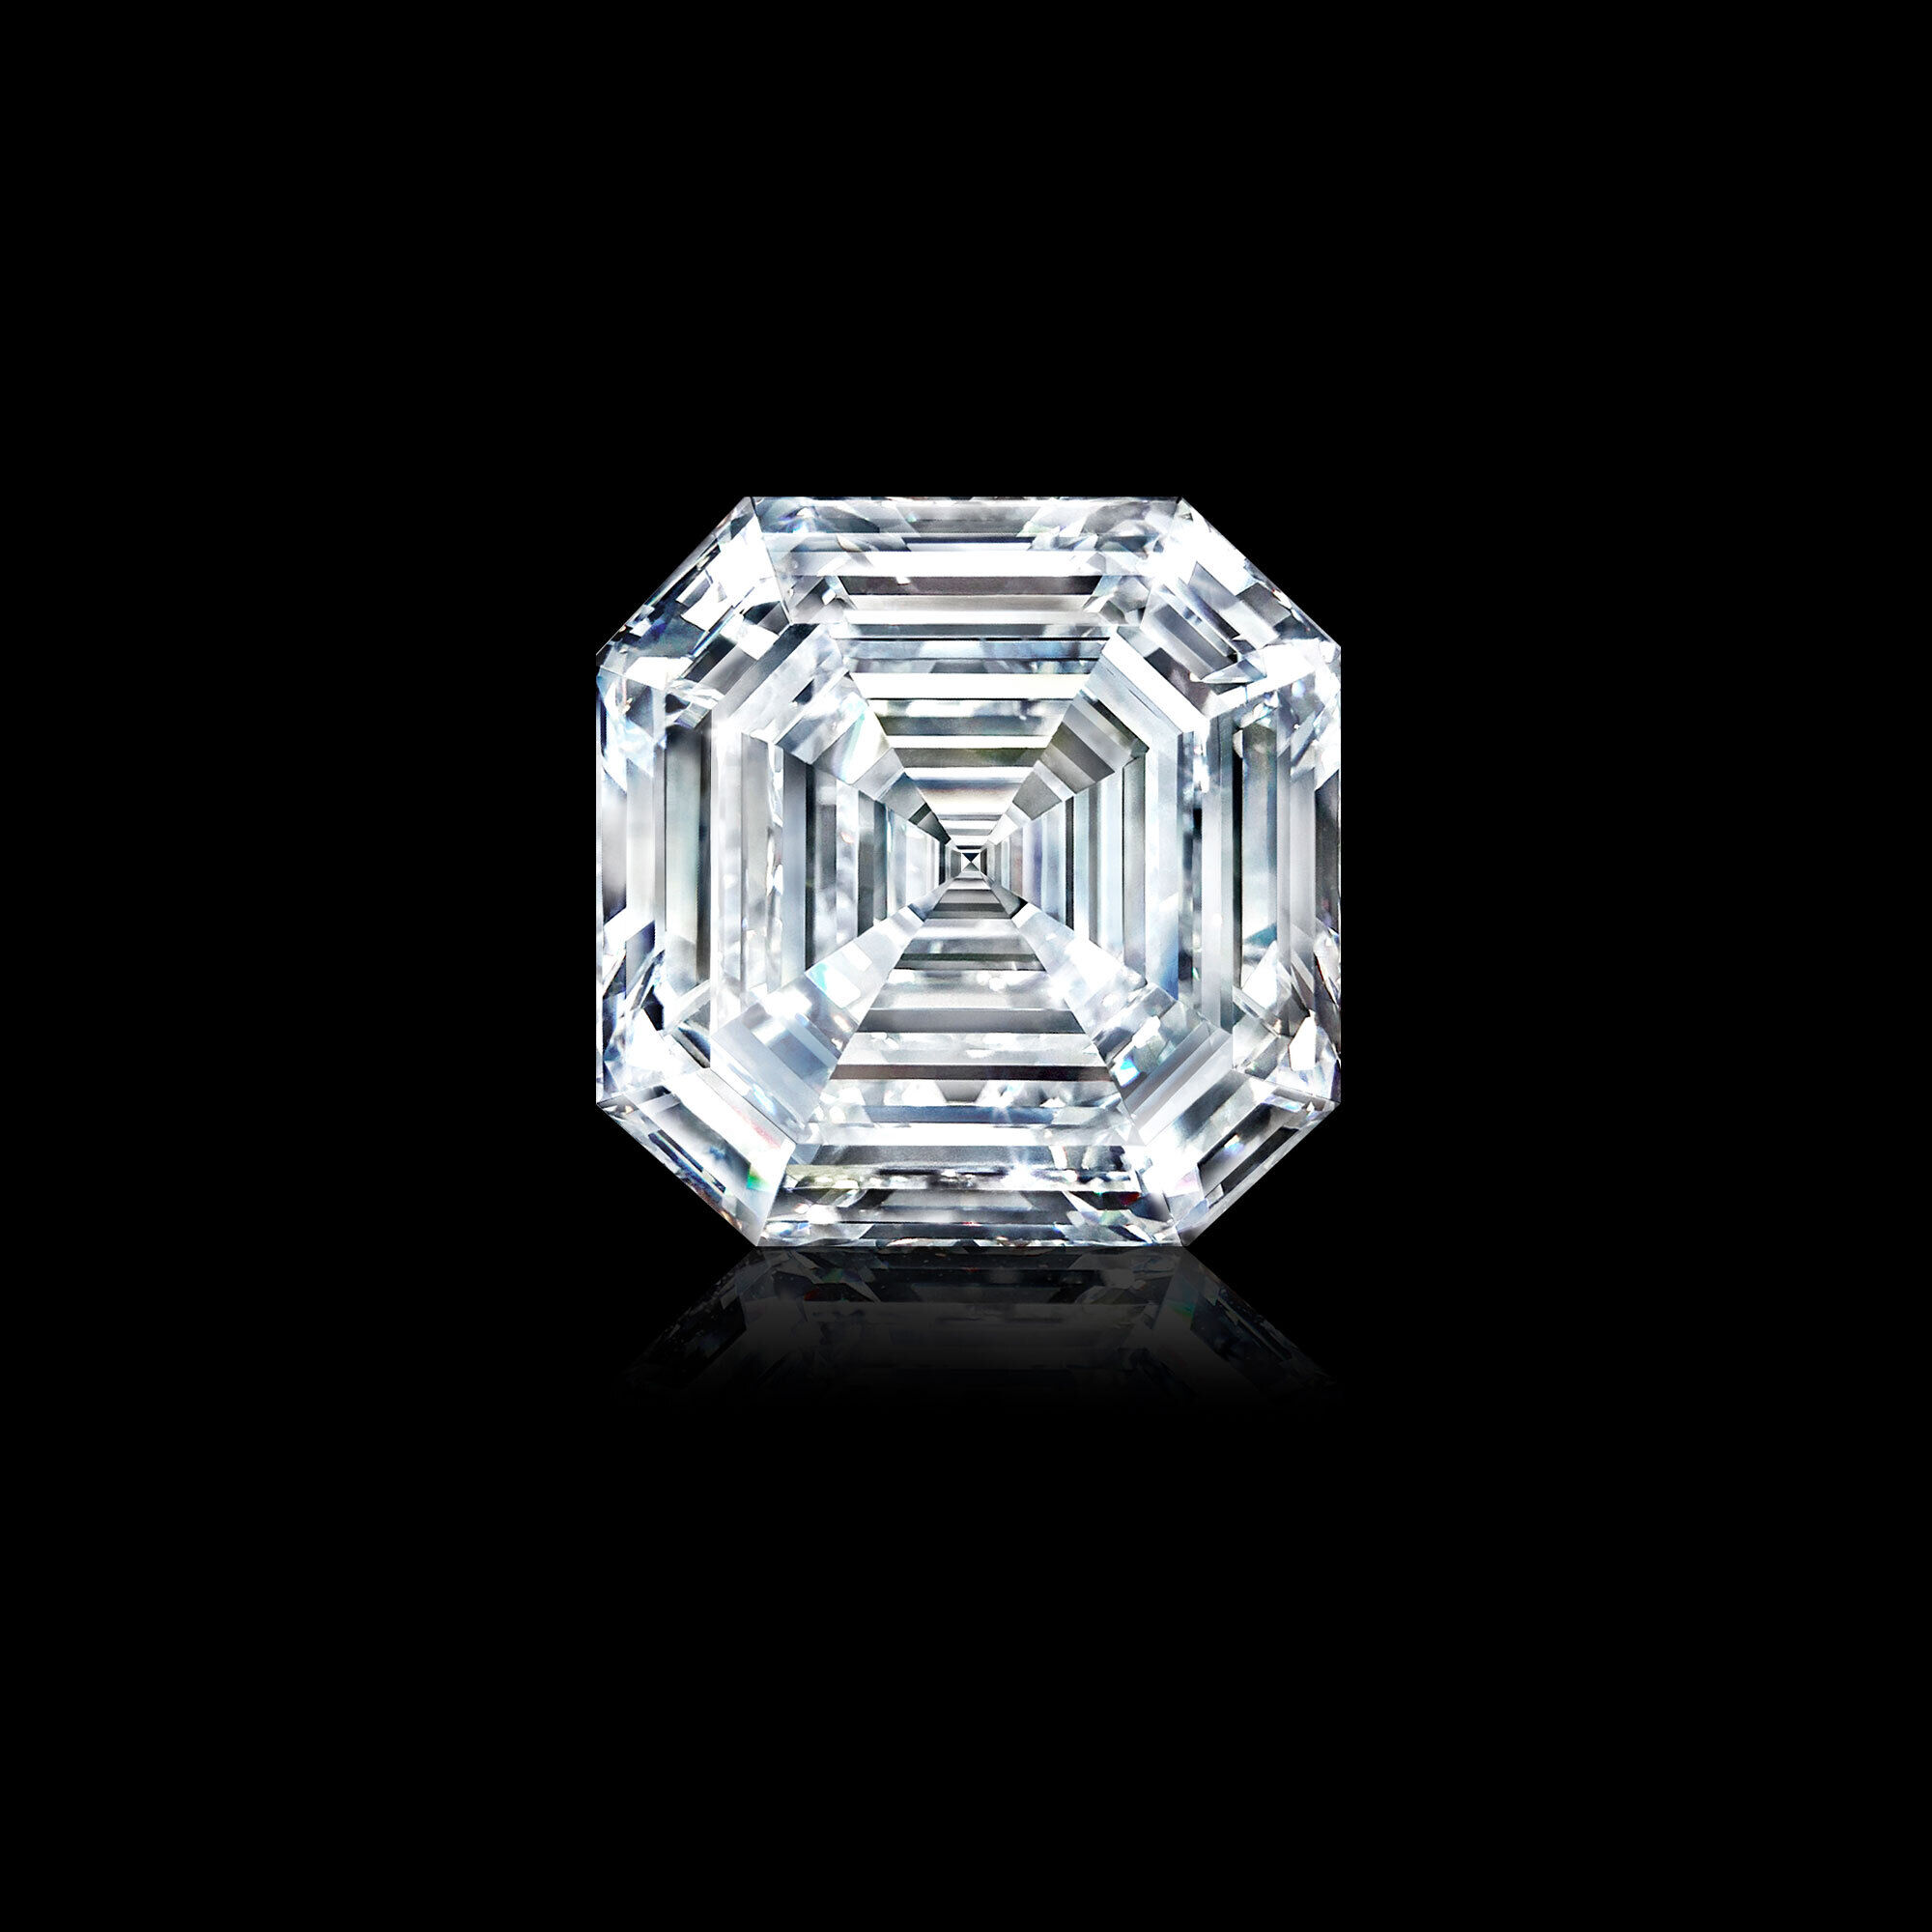 The 302.37 carats Graff Lesedi La Rona diamond 